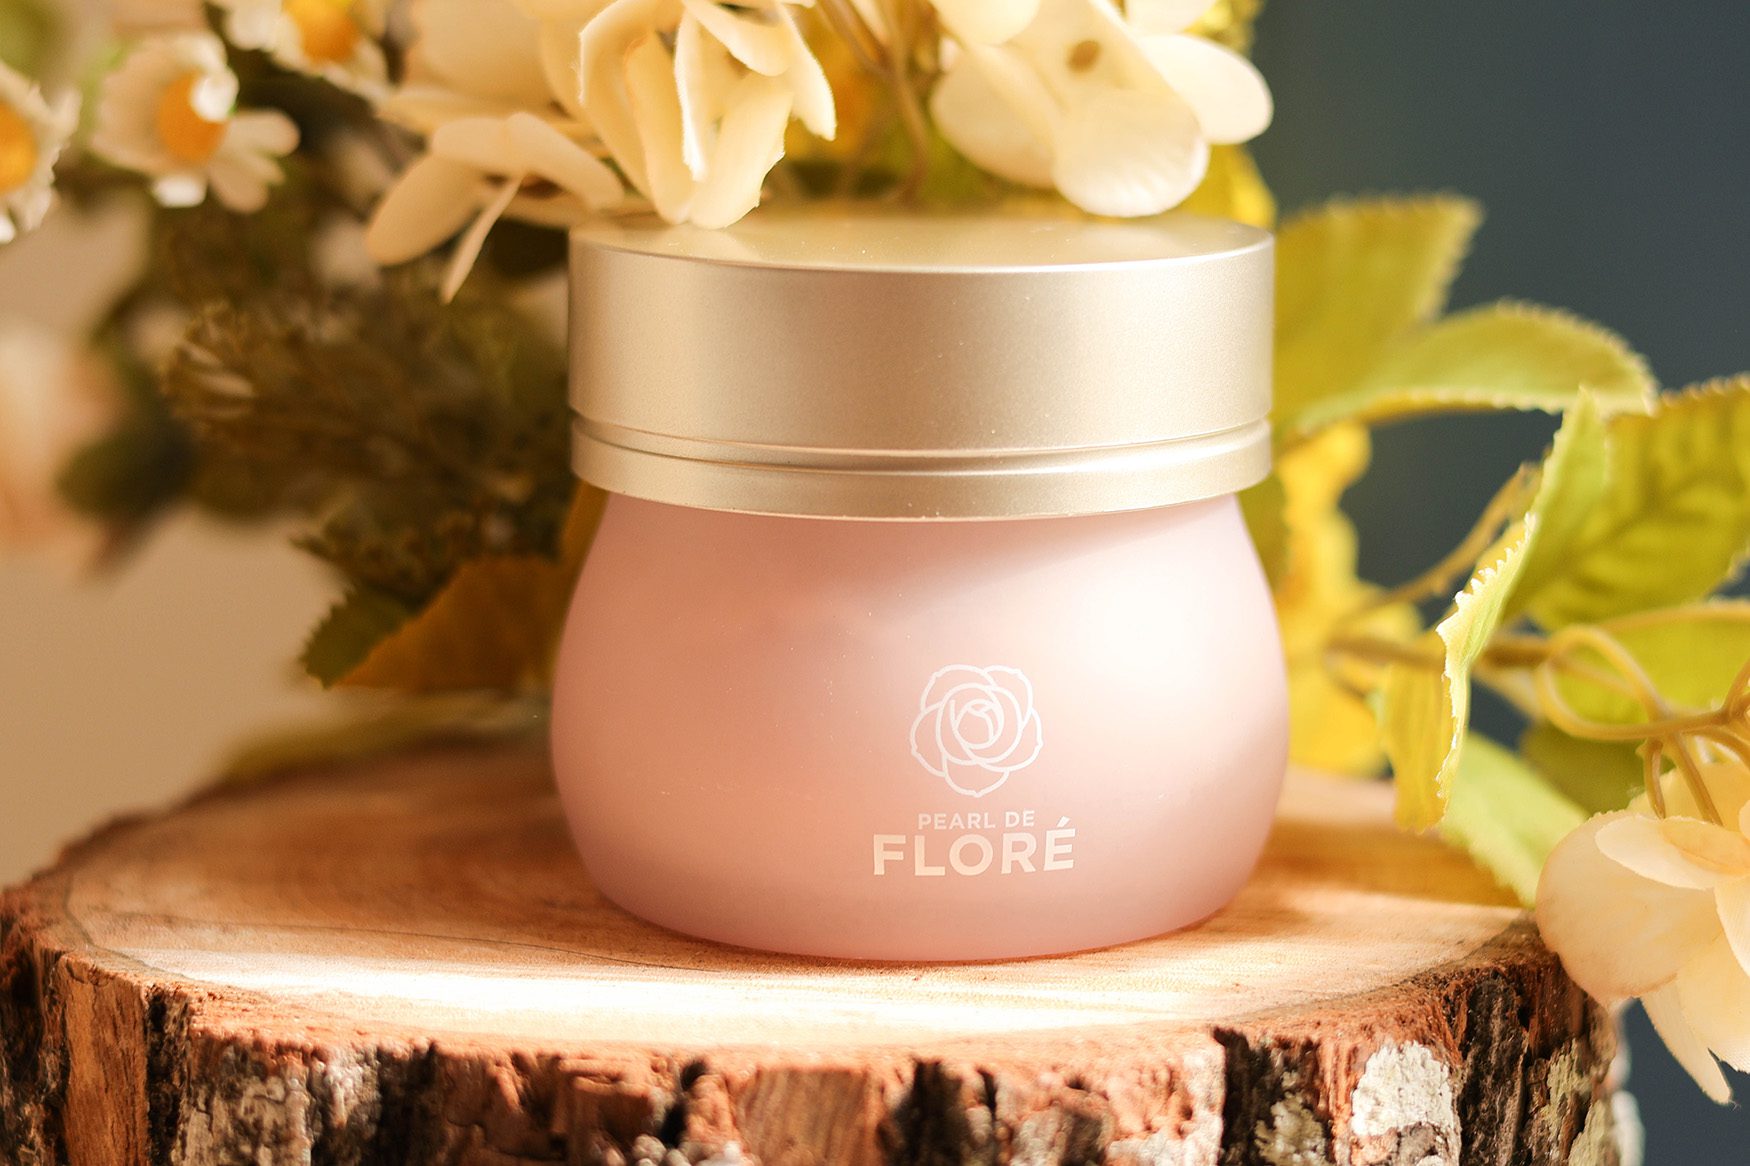 Pearl de Flore來自美國天然植萃品牌／高效牡丹抗老緊緻面膜／簡單地敷臉也可以跟時間逆行喔 @Rosa的秘密花園